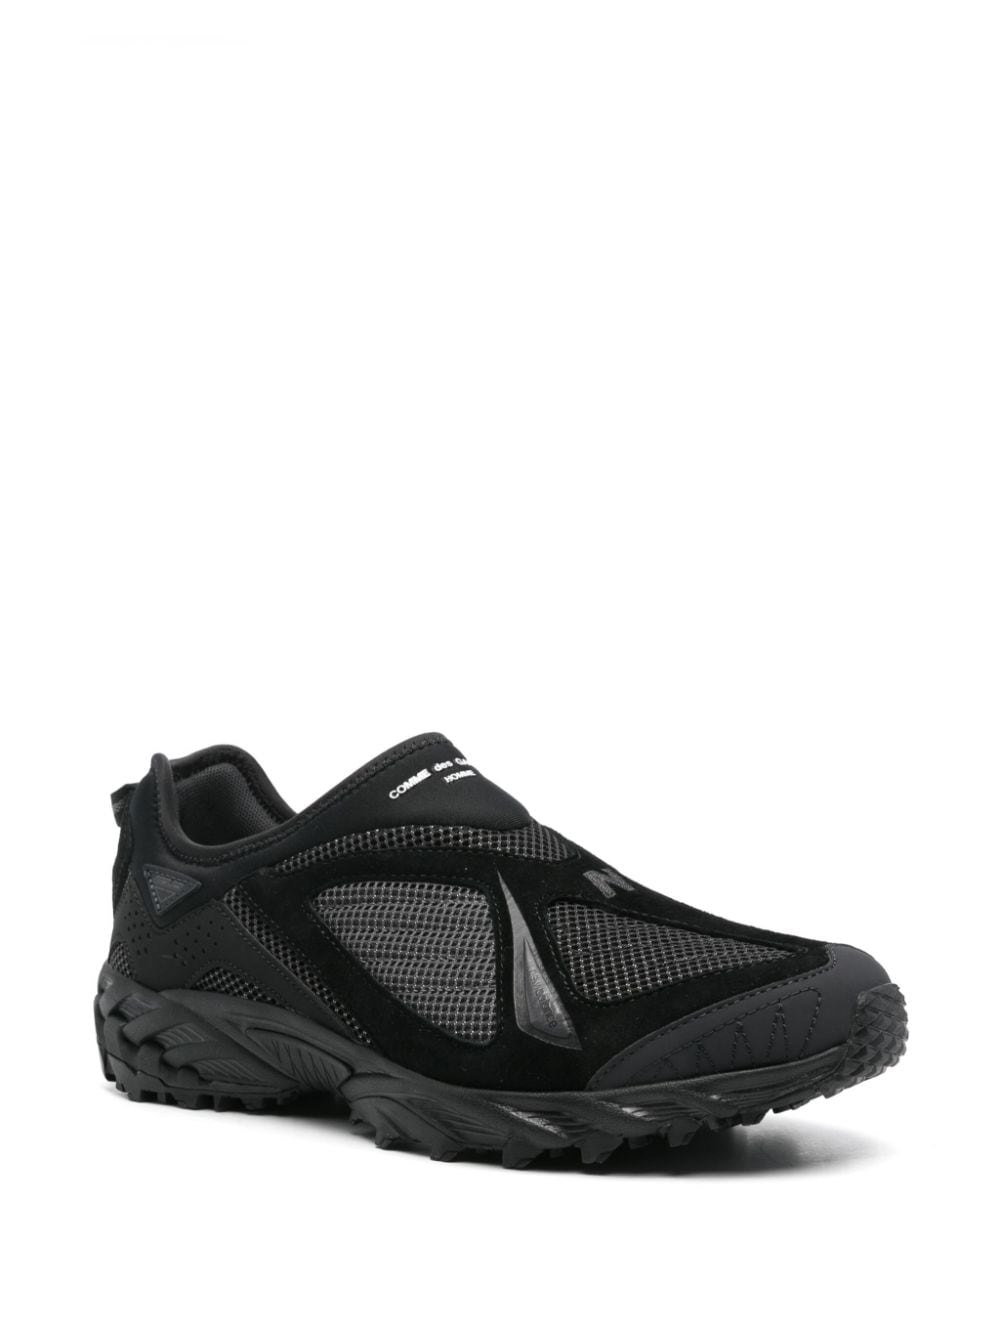 Comme des Garçons Homme x New Balance 610S sneakers - Zwart